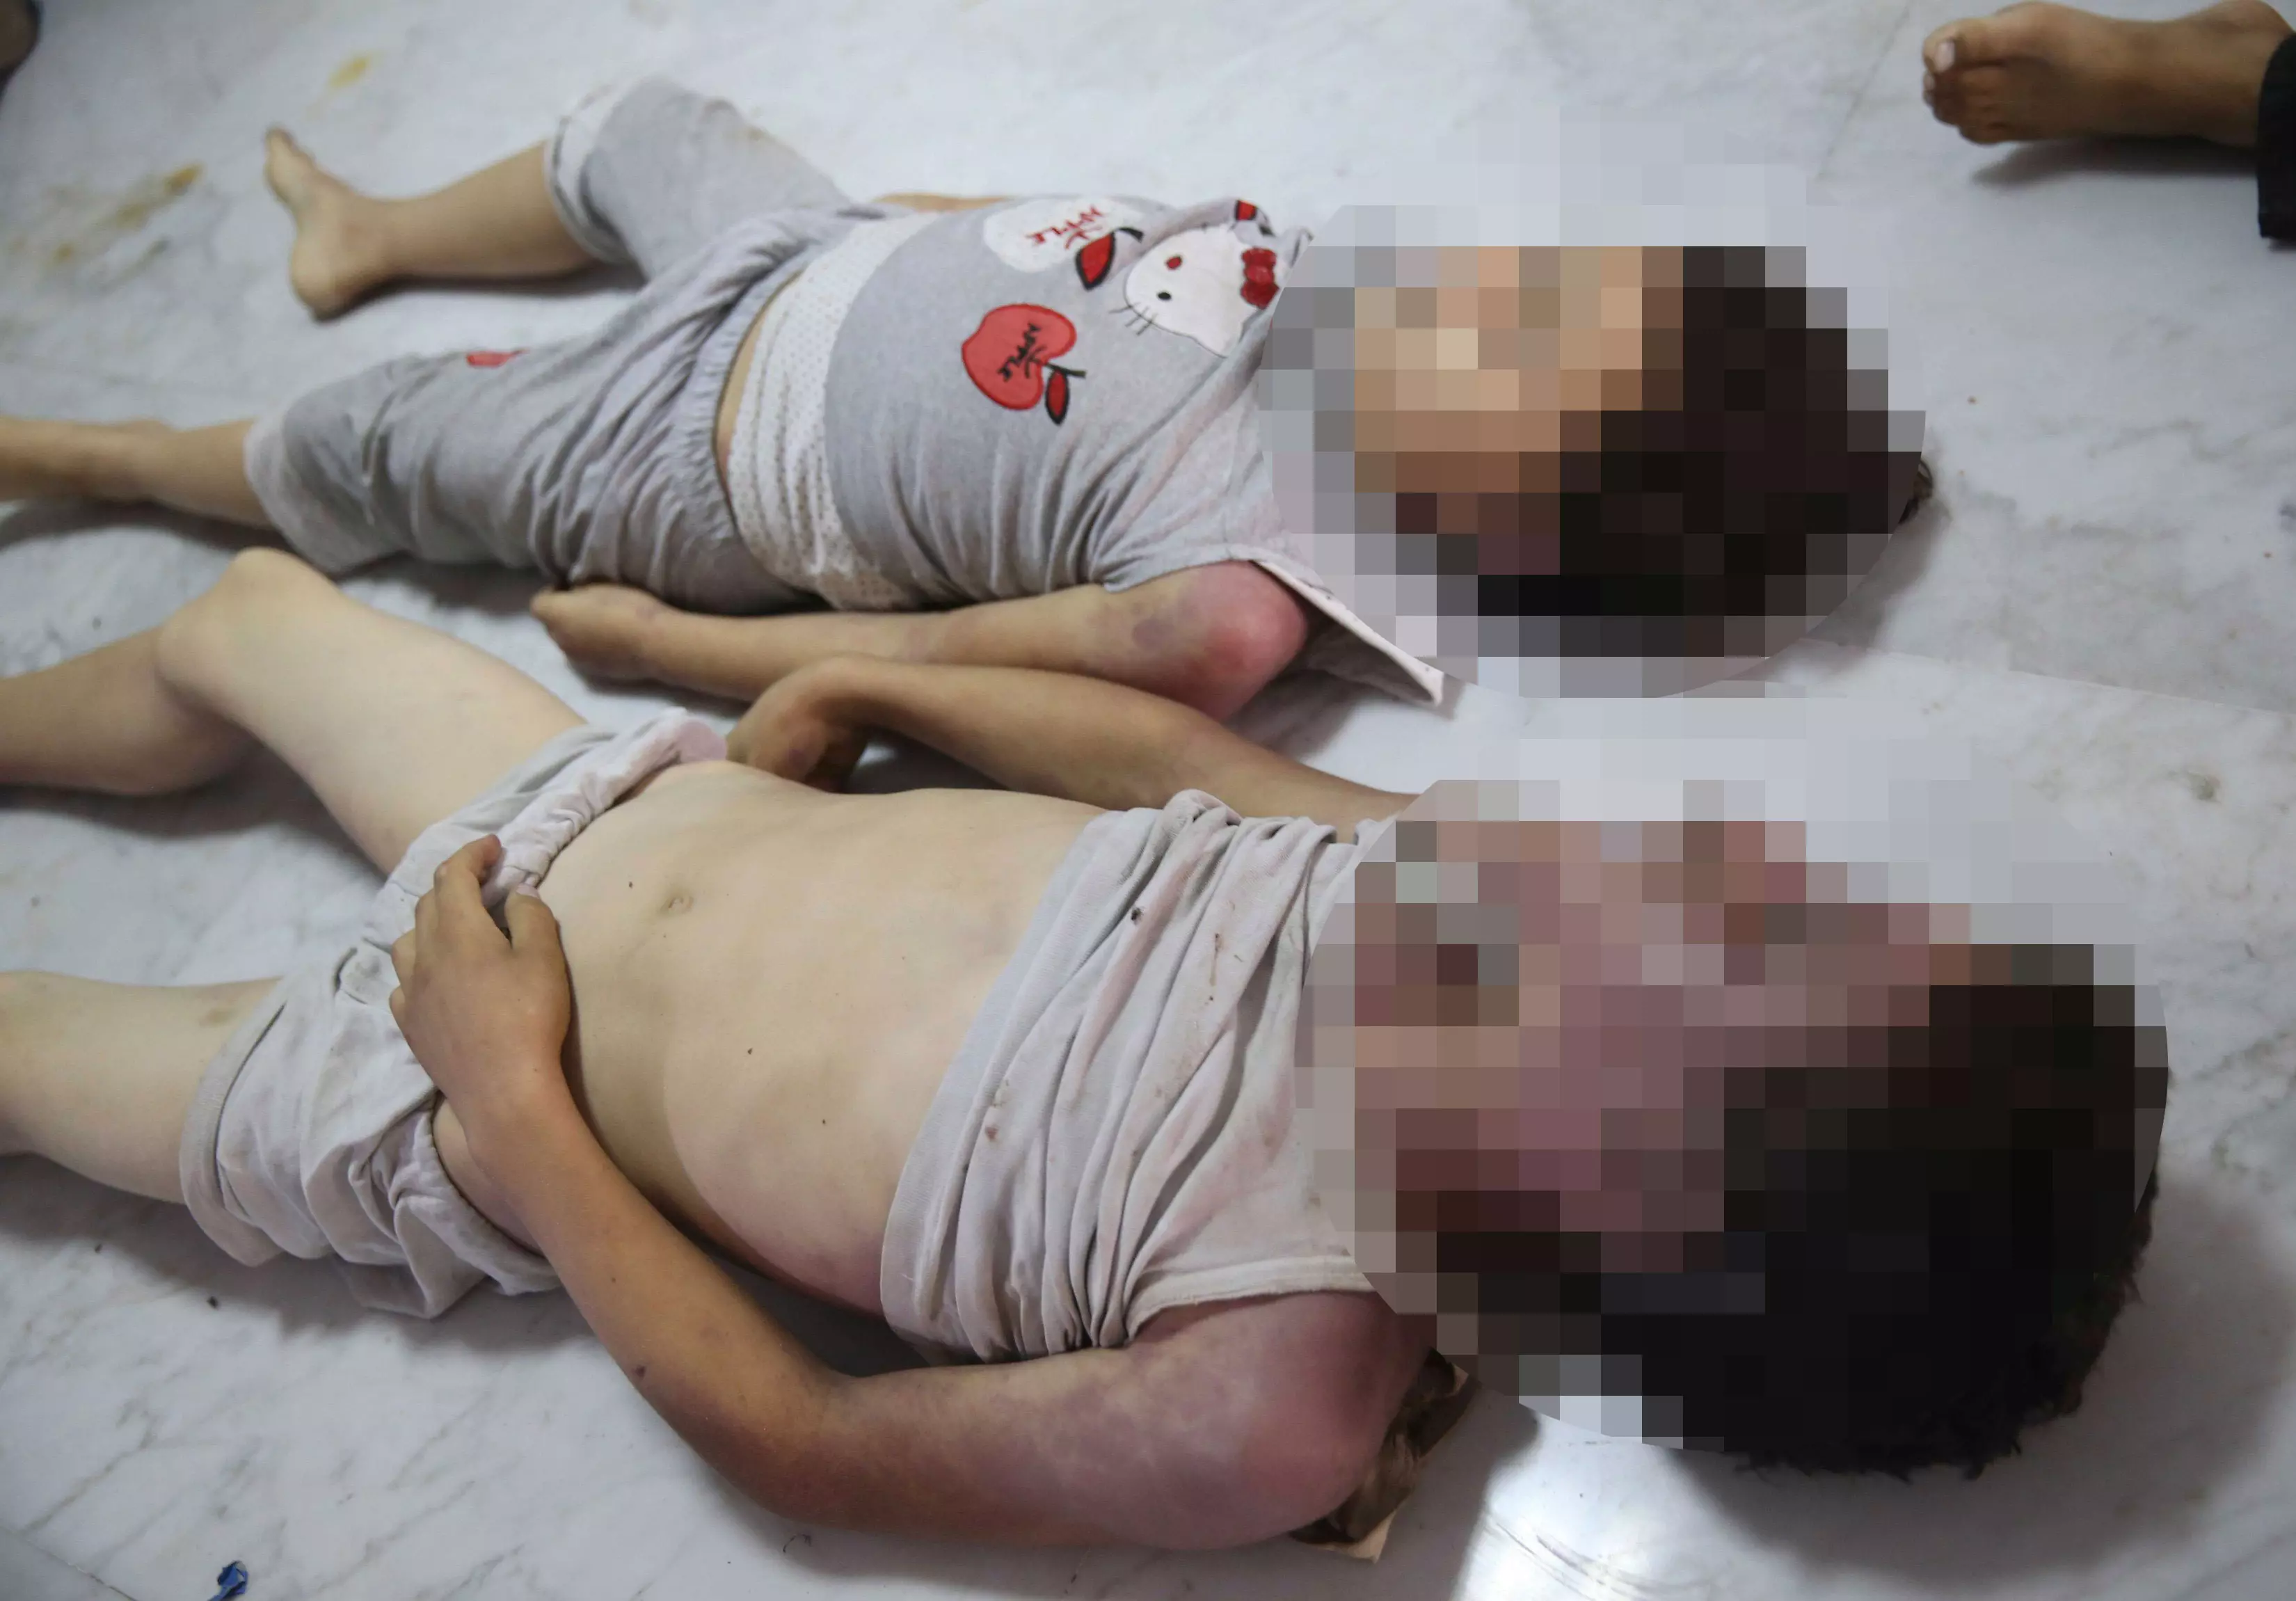 אסון הומניטרי ברור. גופות ילדים שנפגעו מנשק כימי, בחודש שעבר בפרברי דמשק